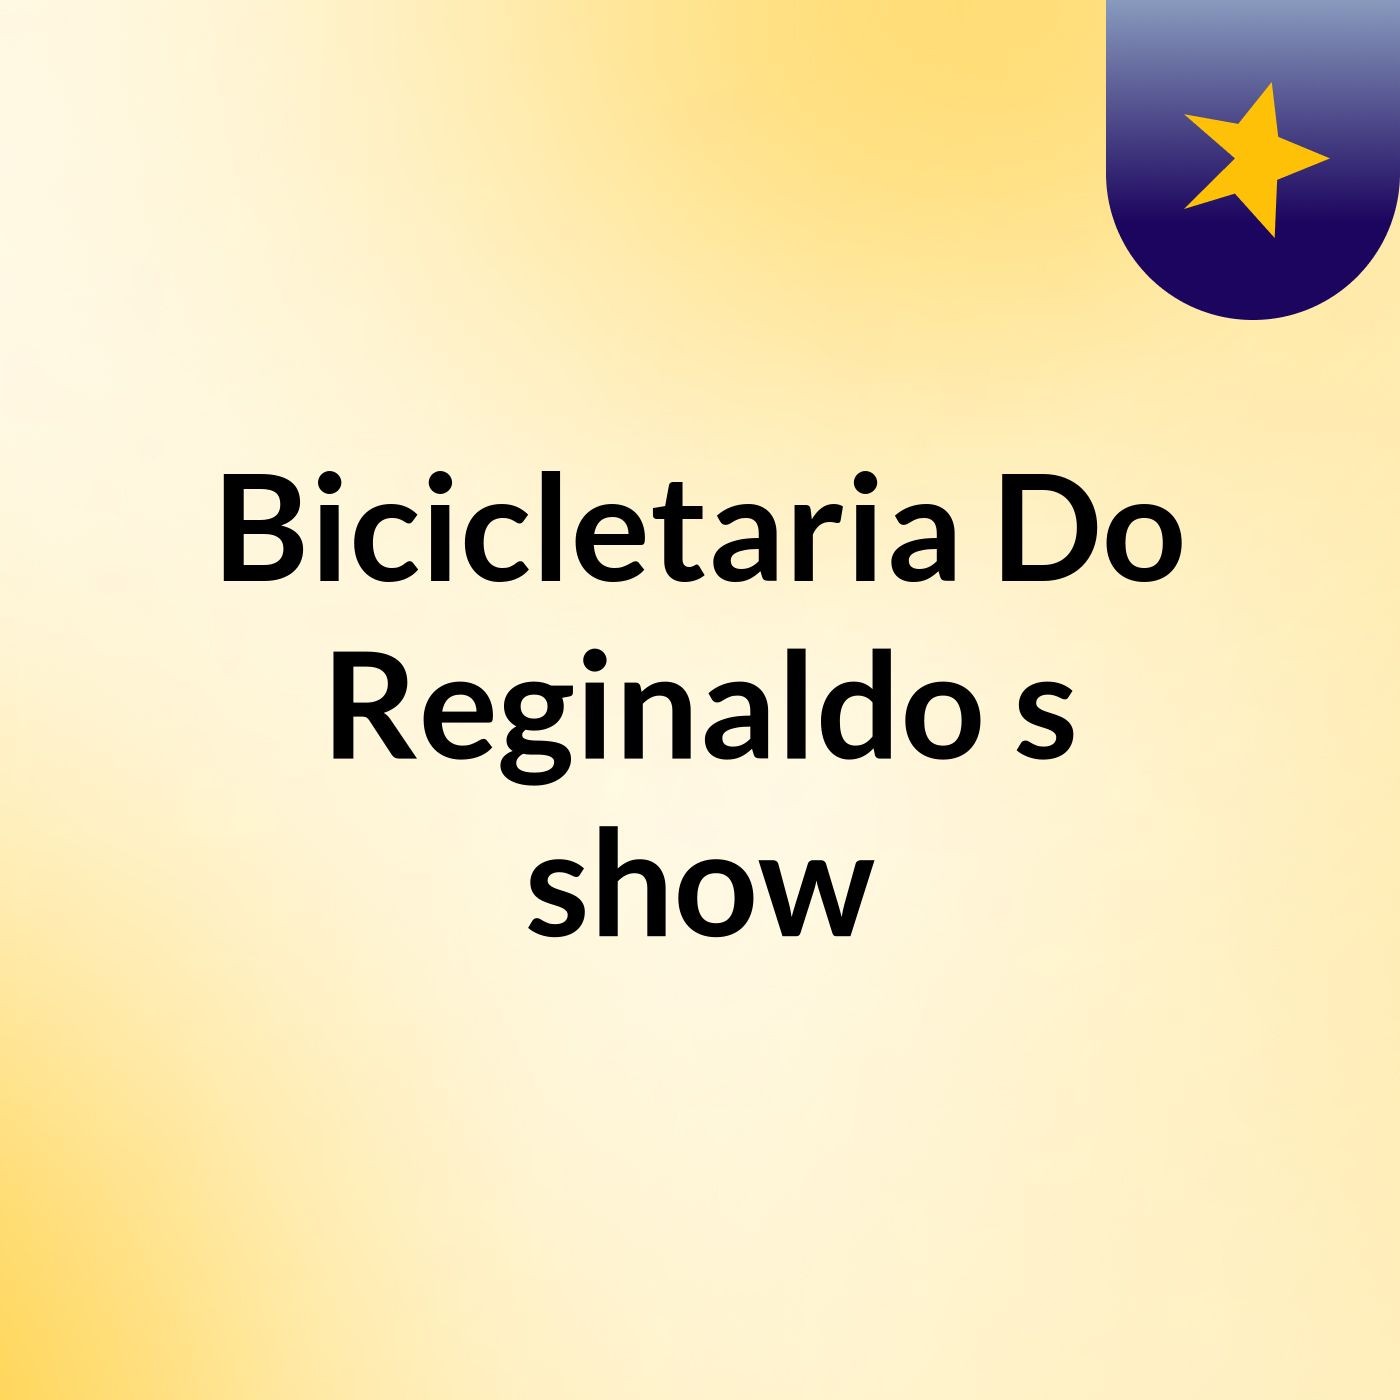 Bicicletaria Do Reginaldo's show